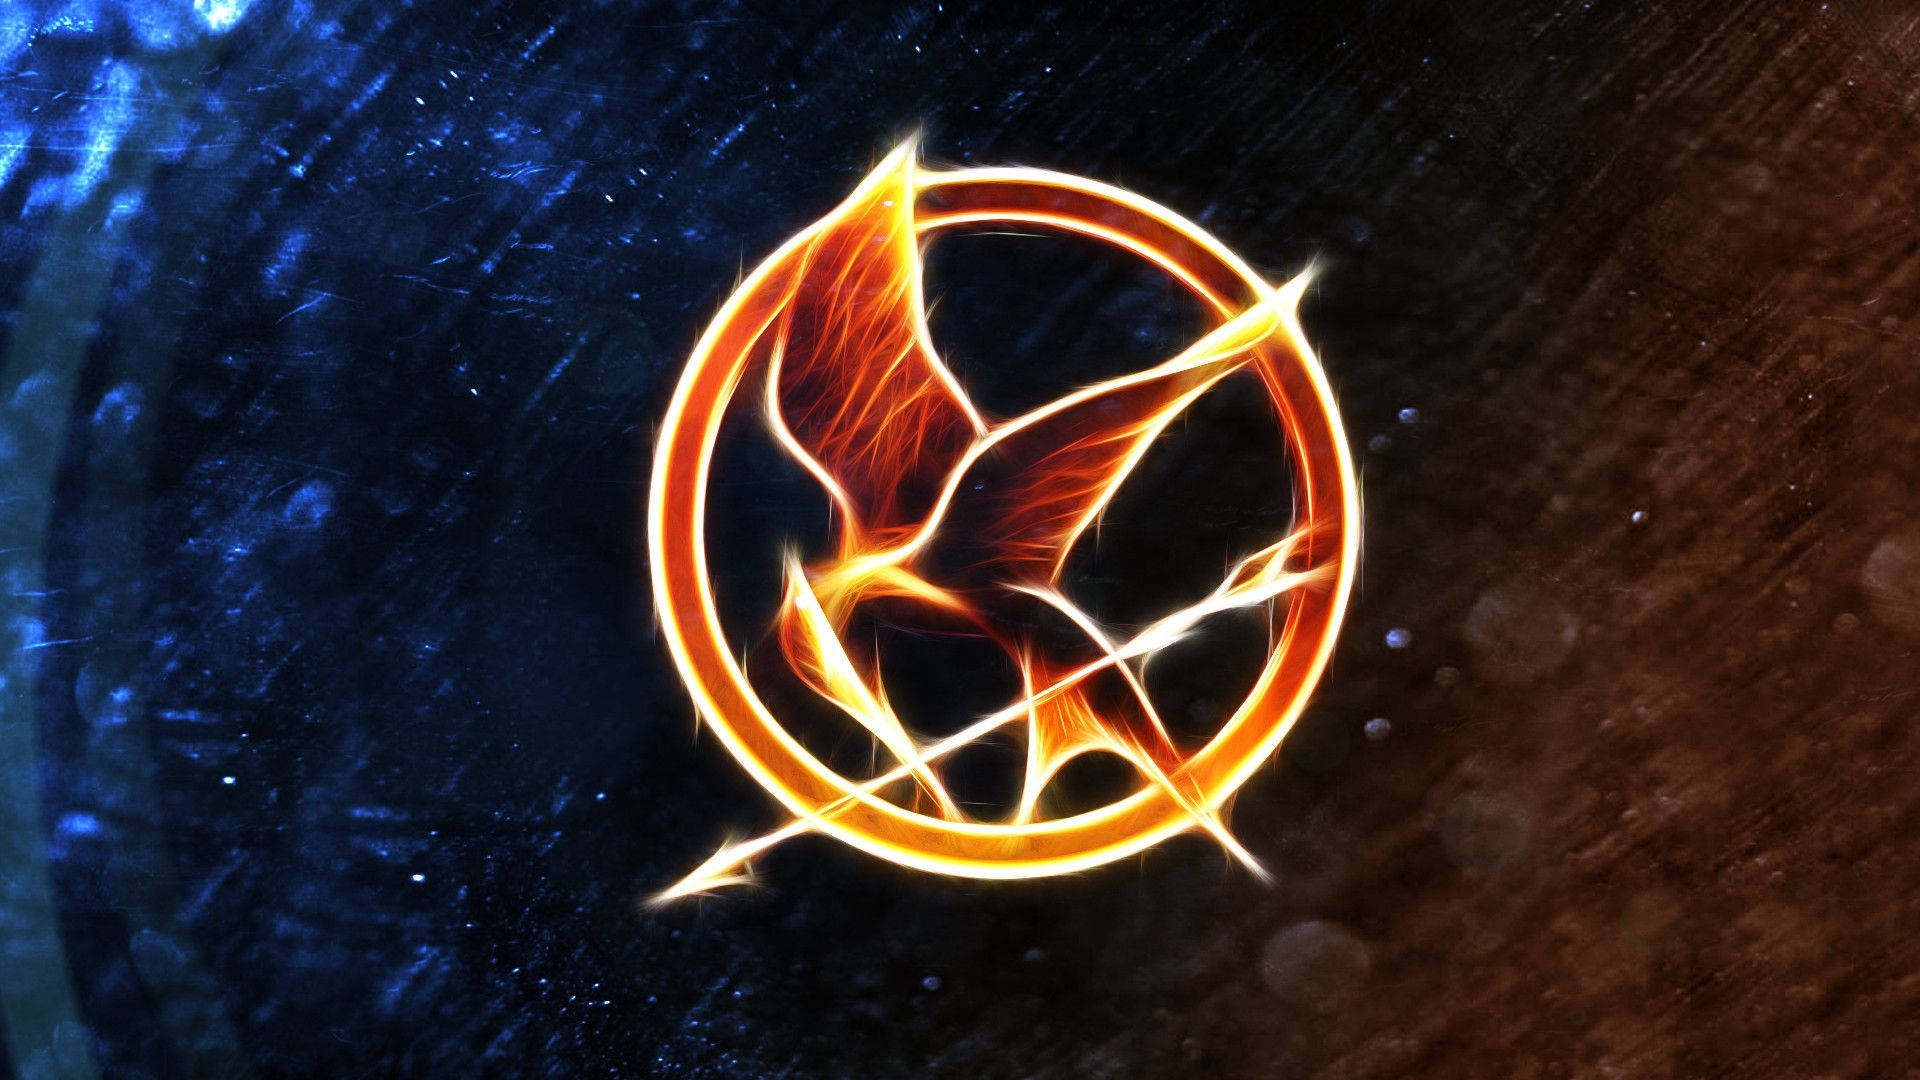 Katniss Everdeen Draws Her Bow - The Hunger Games Wallpaper